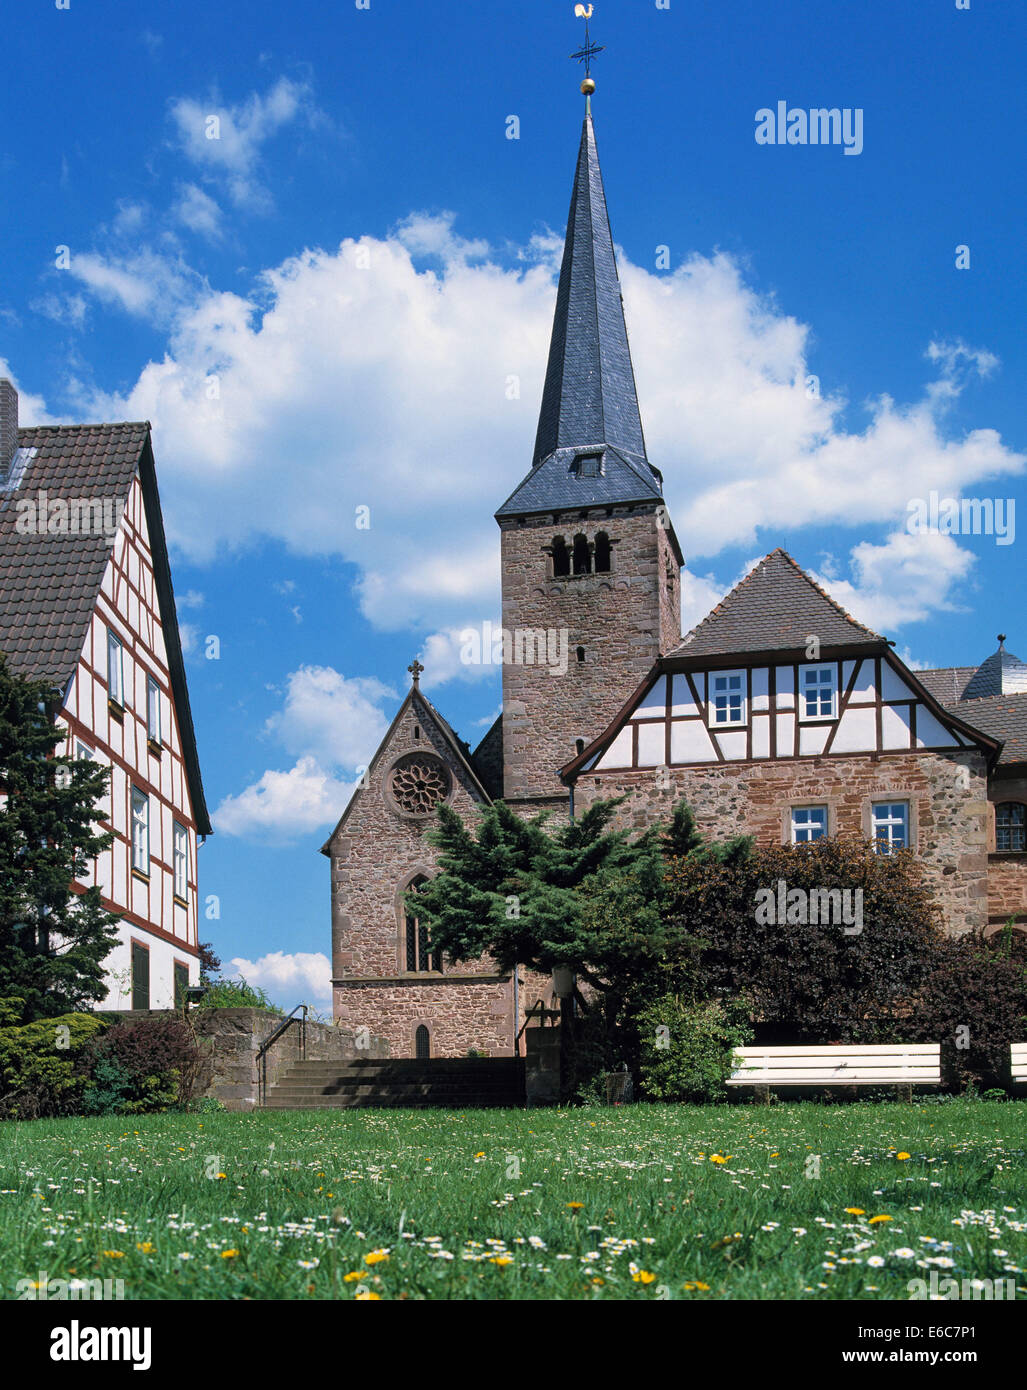 Fachwerkhaeuser und Klosterkirche, ehemaliges Benediktinerkloster Schluechtern im Kinzigtal, Hessen Stock Photo